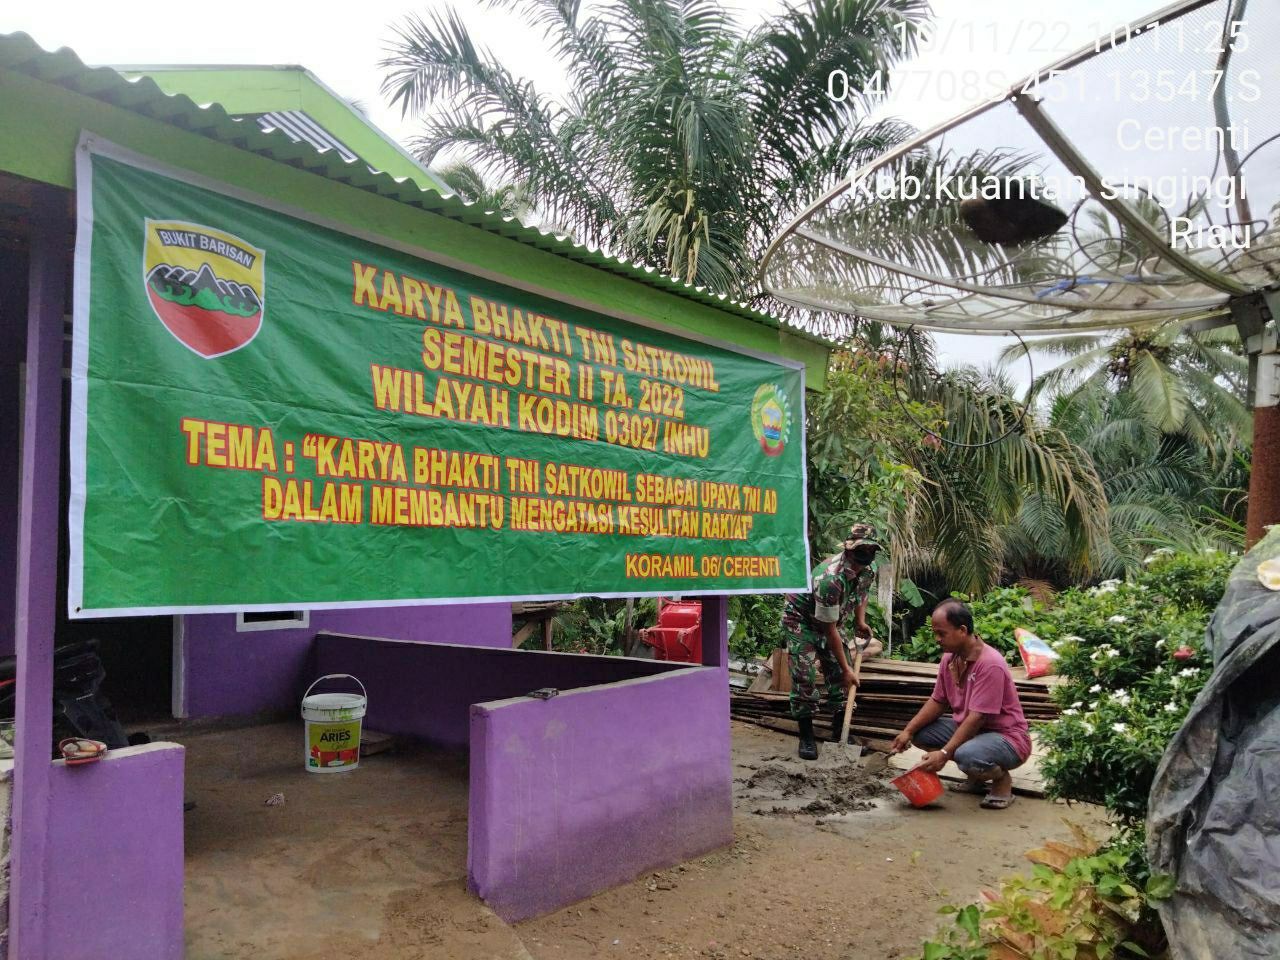 Babinsa Koramil 06/Cerenti Dim 0302/Inhu Membantu Warga Masyarakat Memperbaiki Rumah di Kelurahan Koto Peraku 